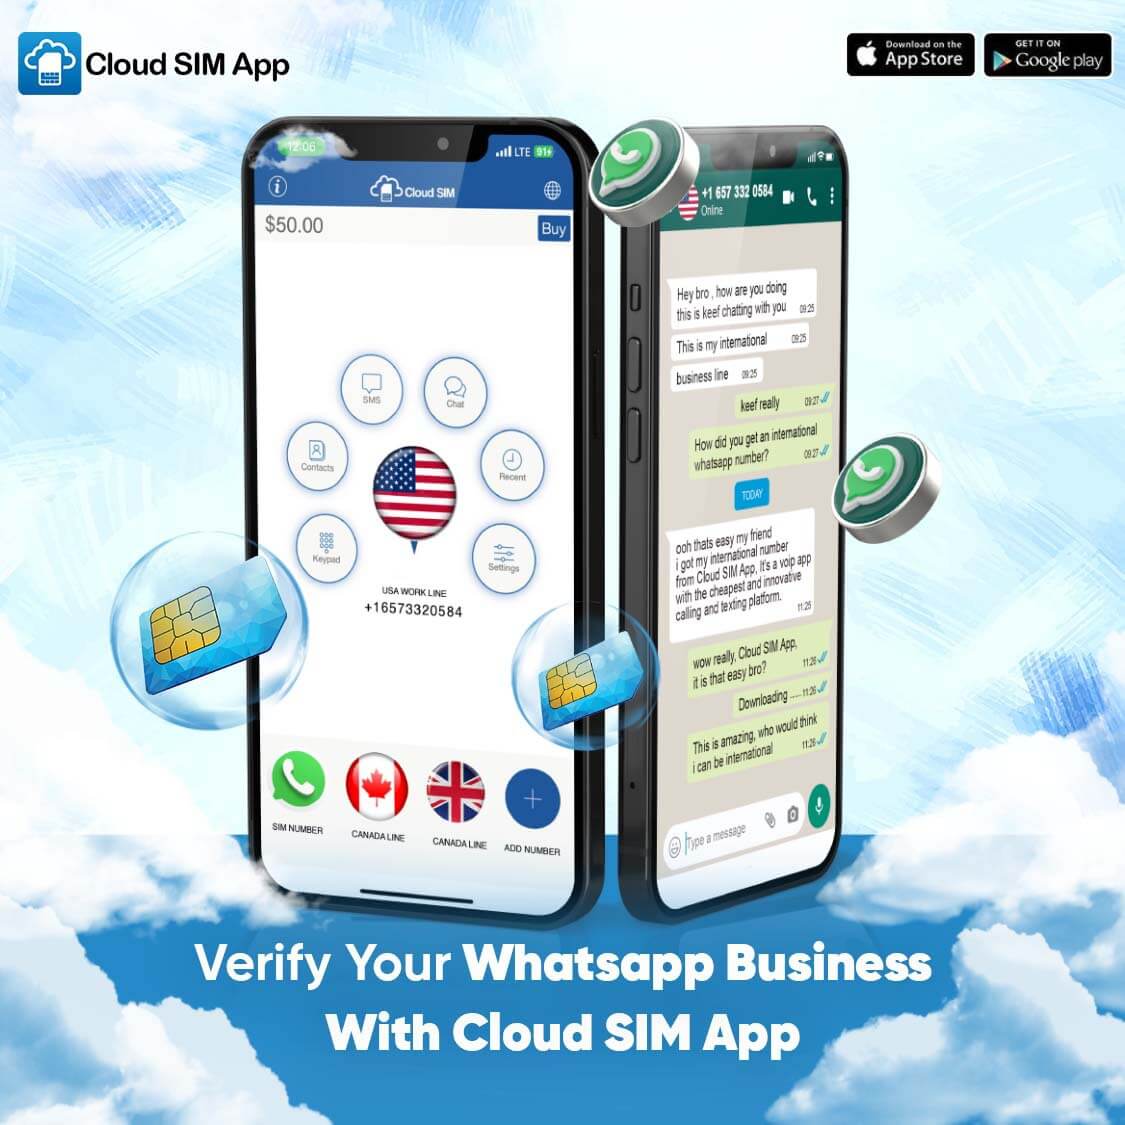 Why Create a Business Account For WhatsApp? Cloud SIM App